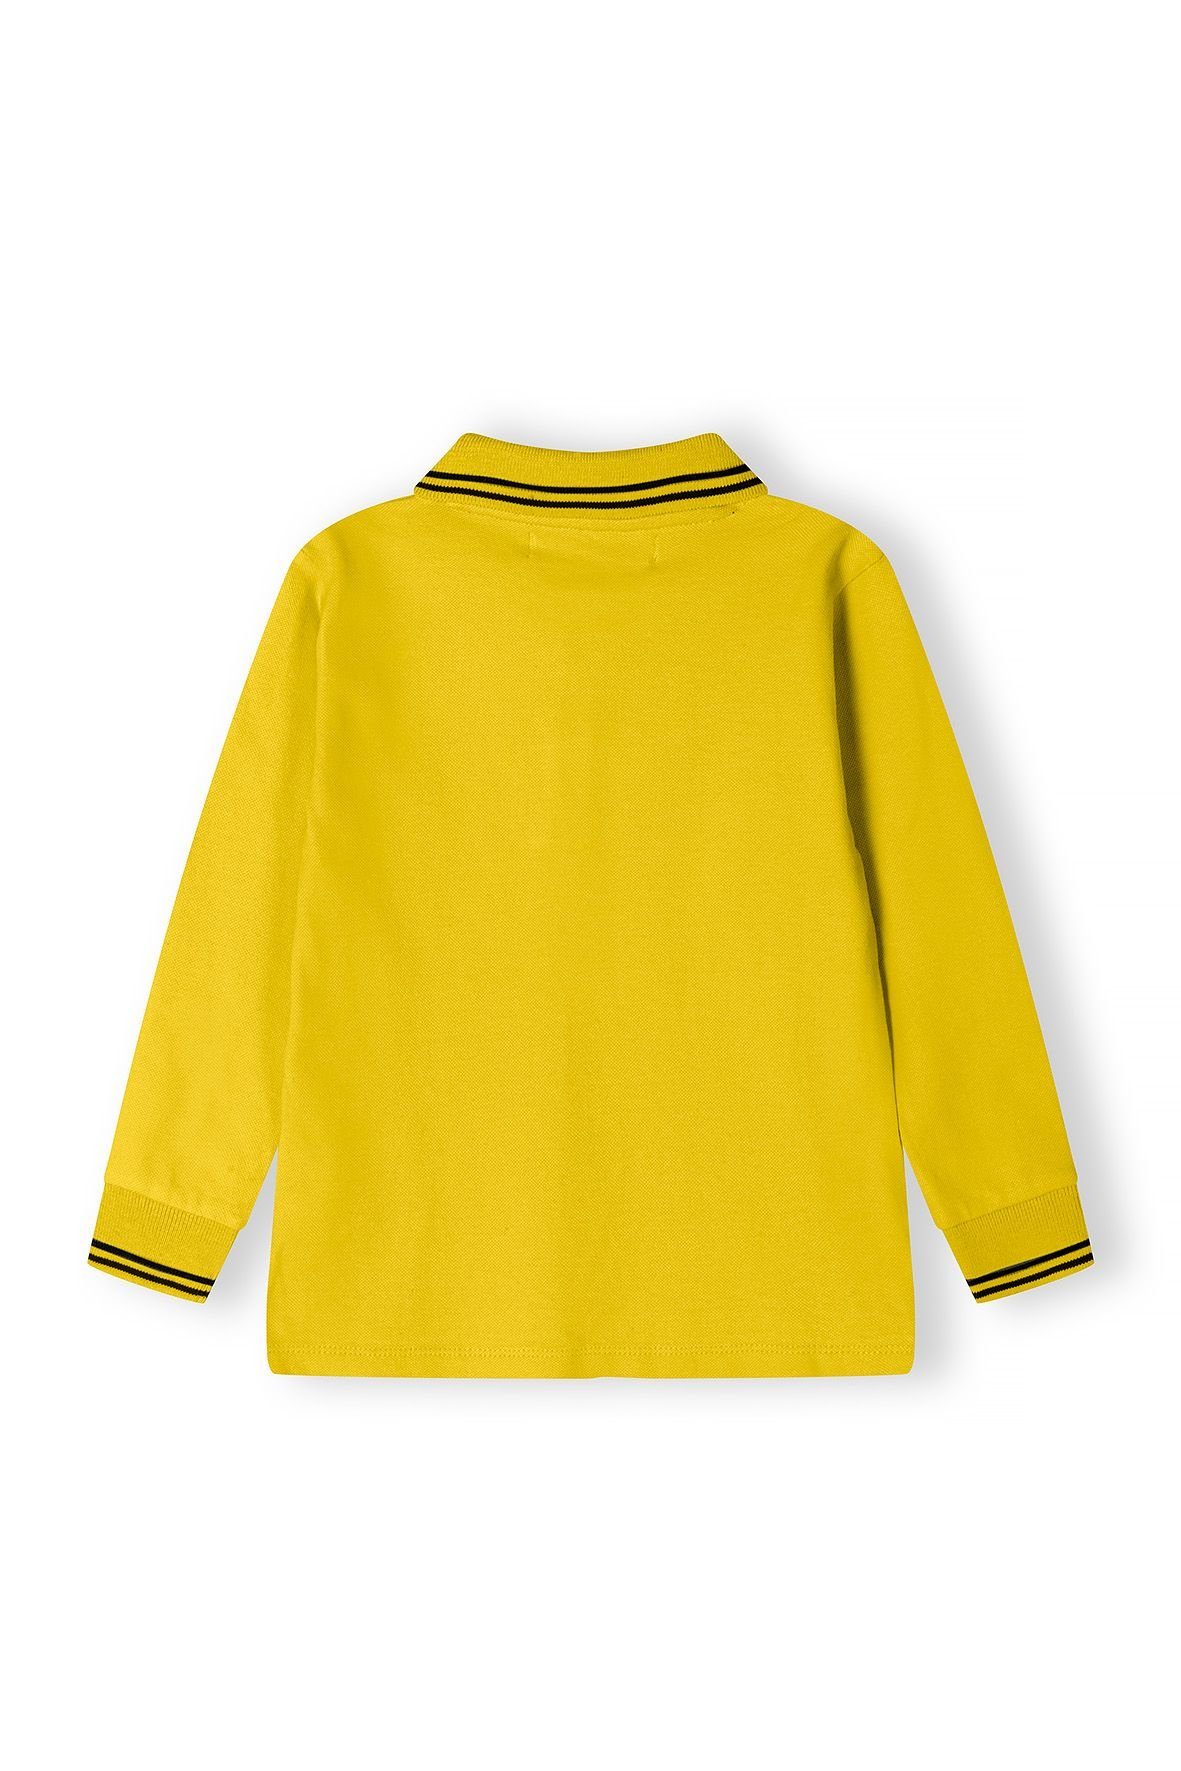 Langärmlig MINOTI Gelb Poloshirt (12m-14y)